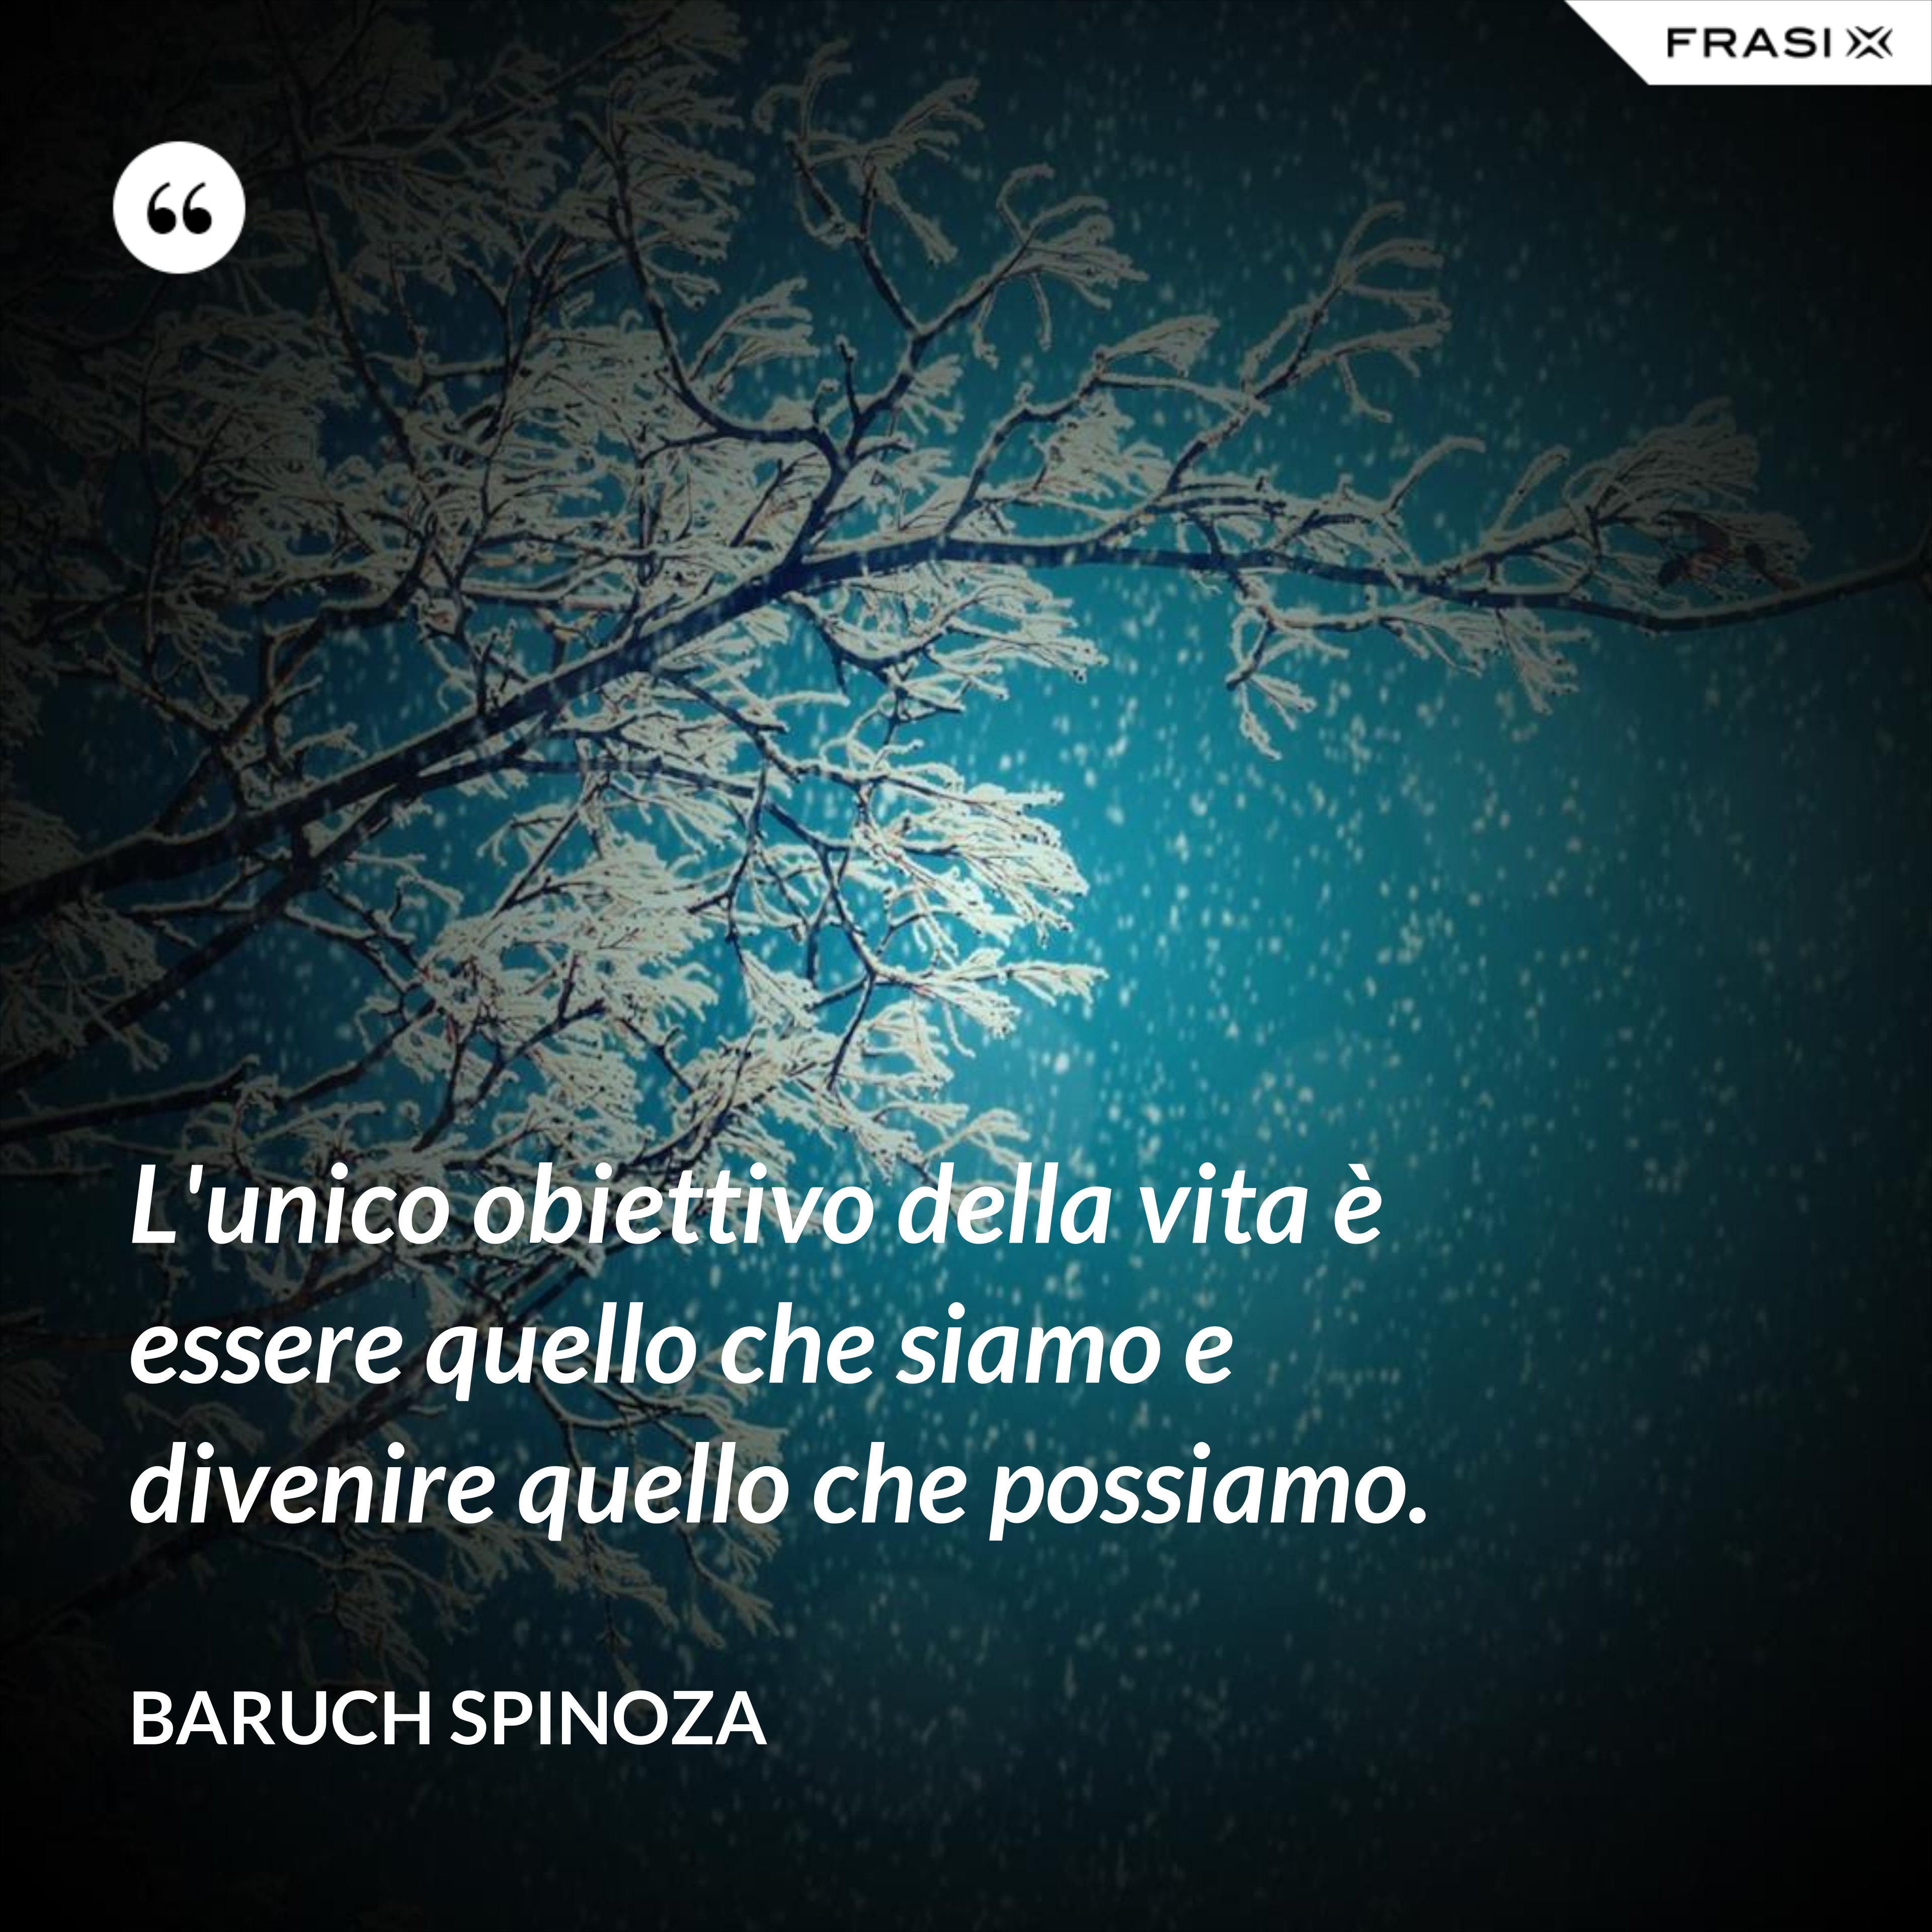 L'unico obiettivo della vita è essere quello che siamo e divenire quello che possiamo. - Baruch Spinoza